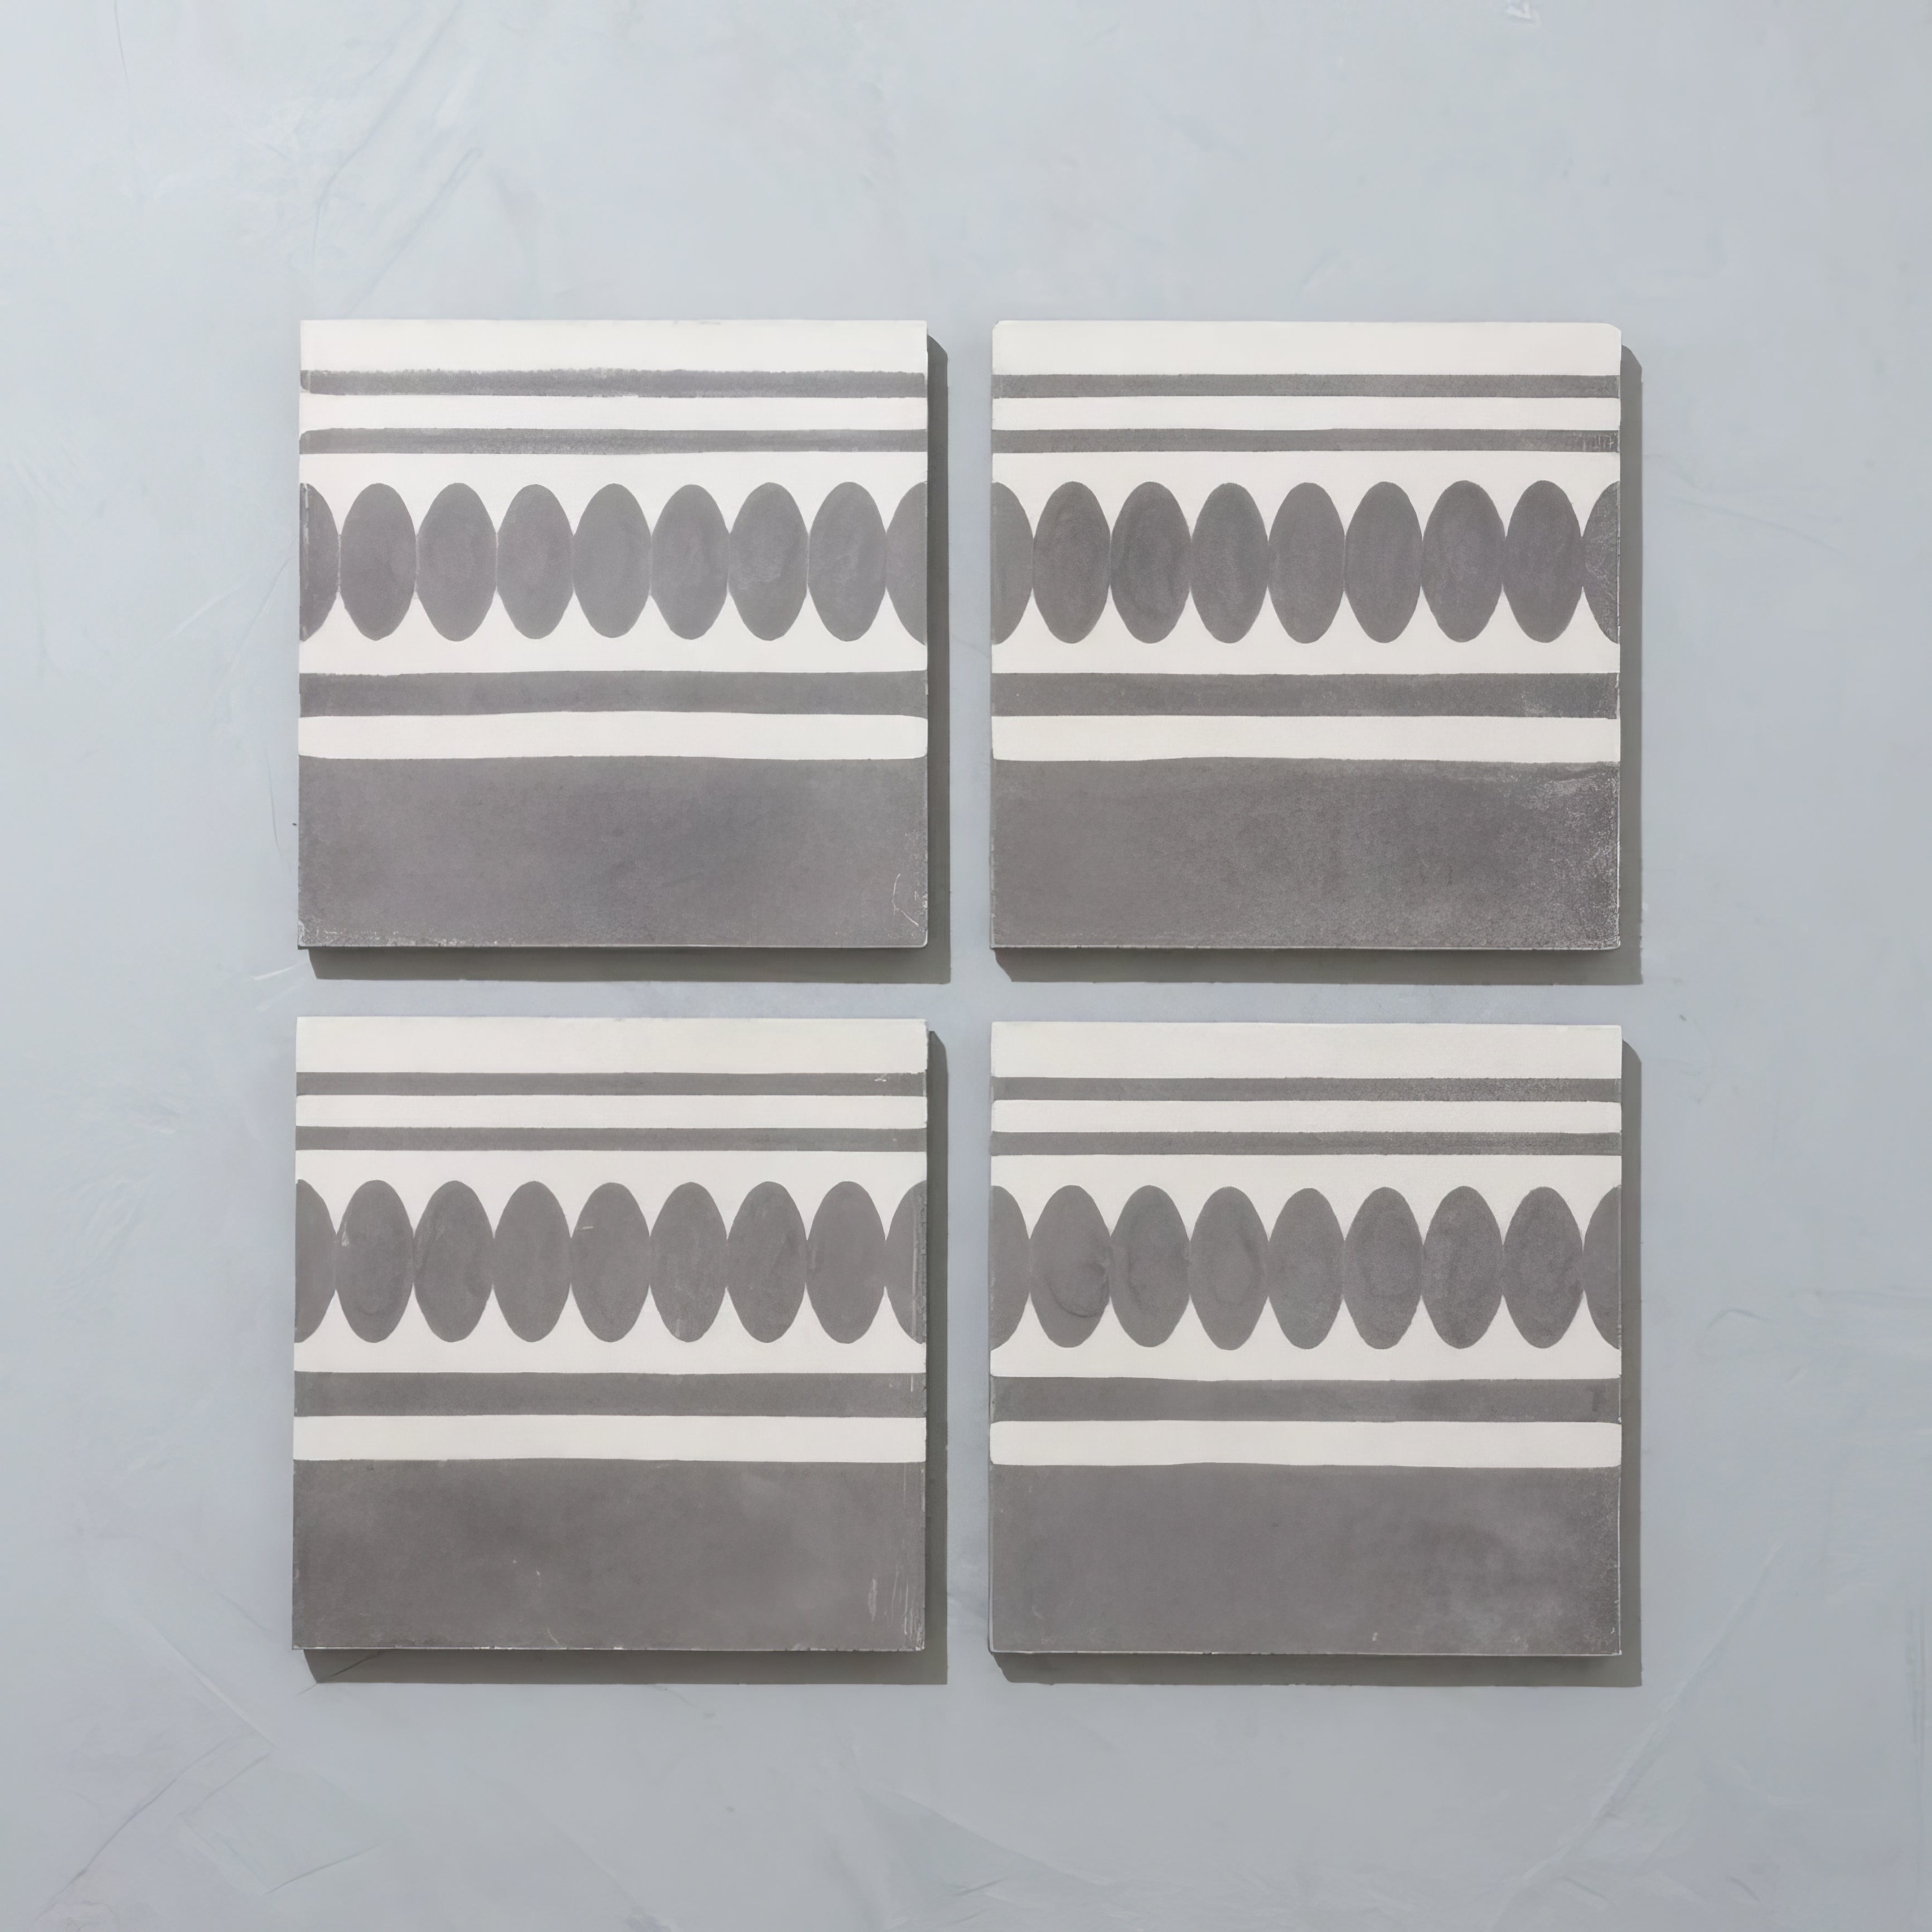 Blake Border Tile - Hyperion Tiles